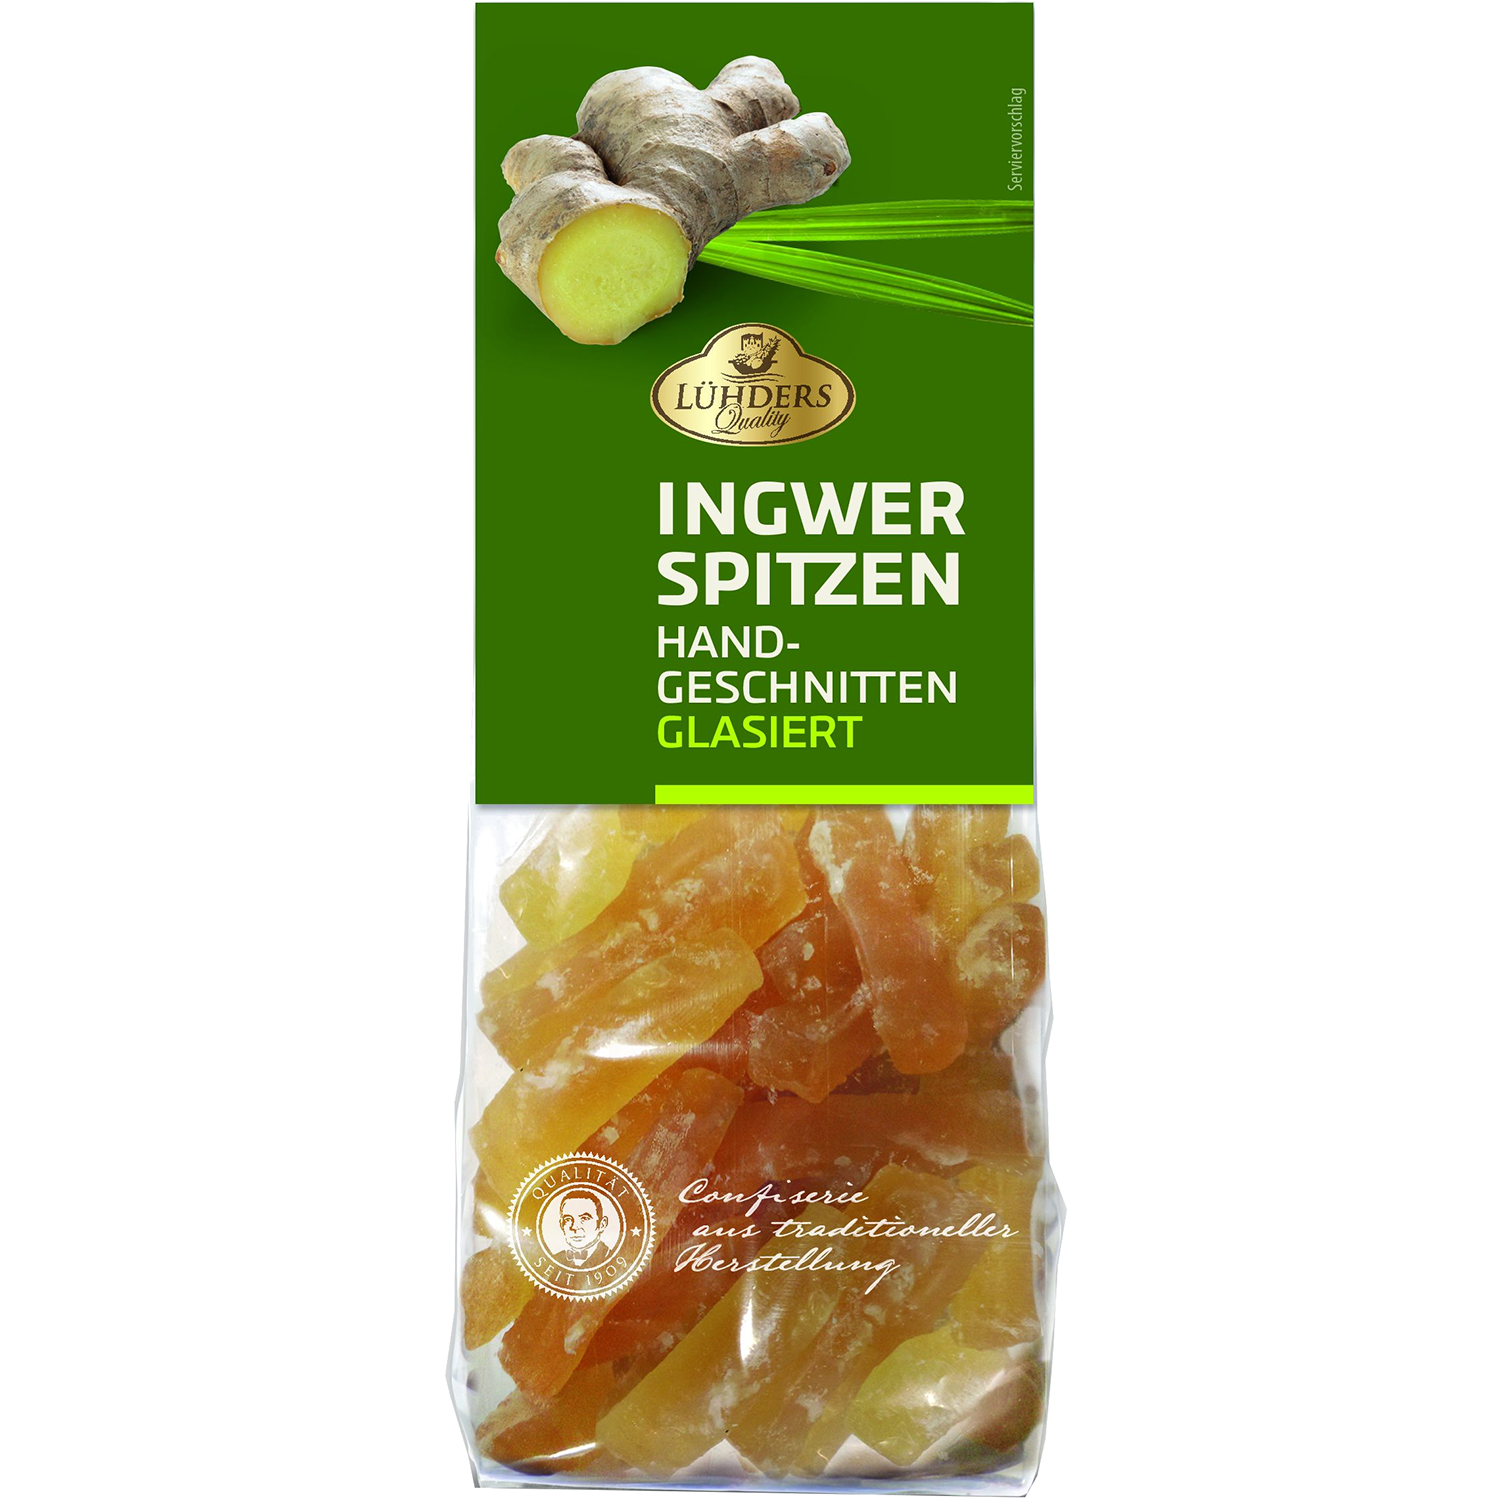 Lühders Ingwer-Spitzen glasiert 150g | Online kaufen im World of Sweets ...